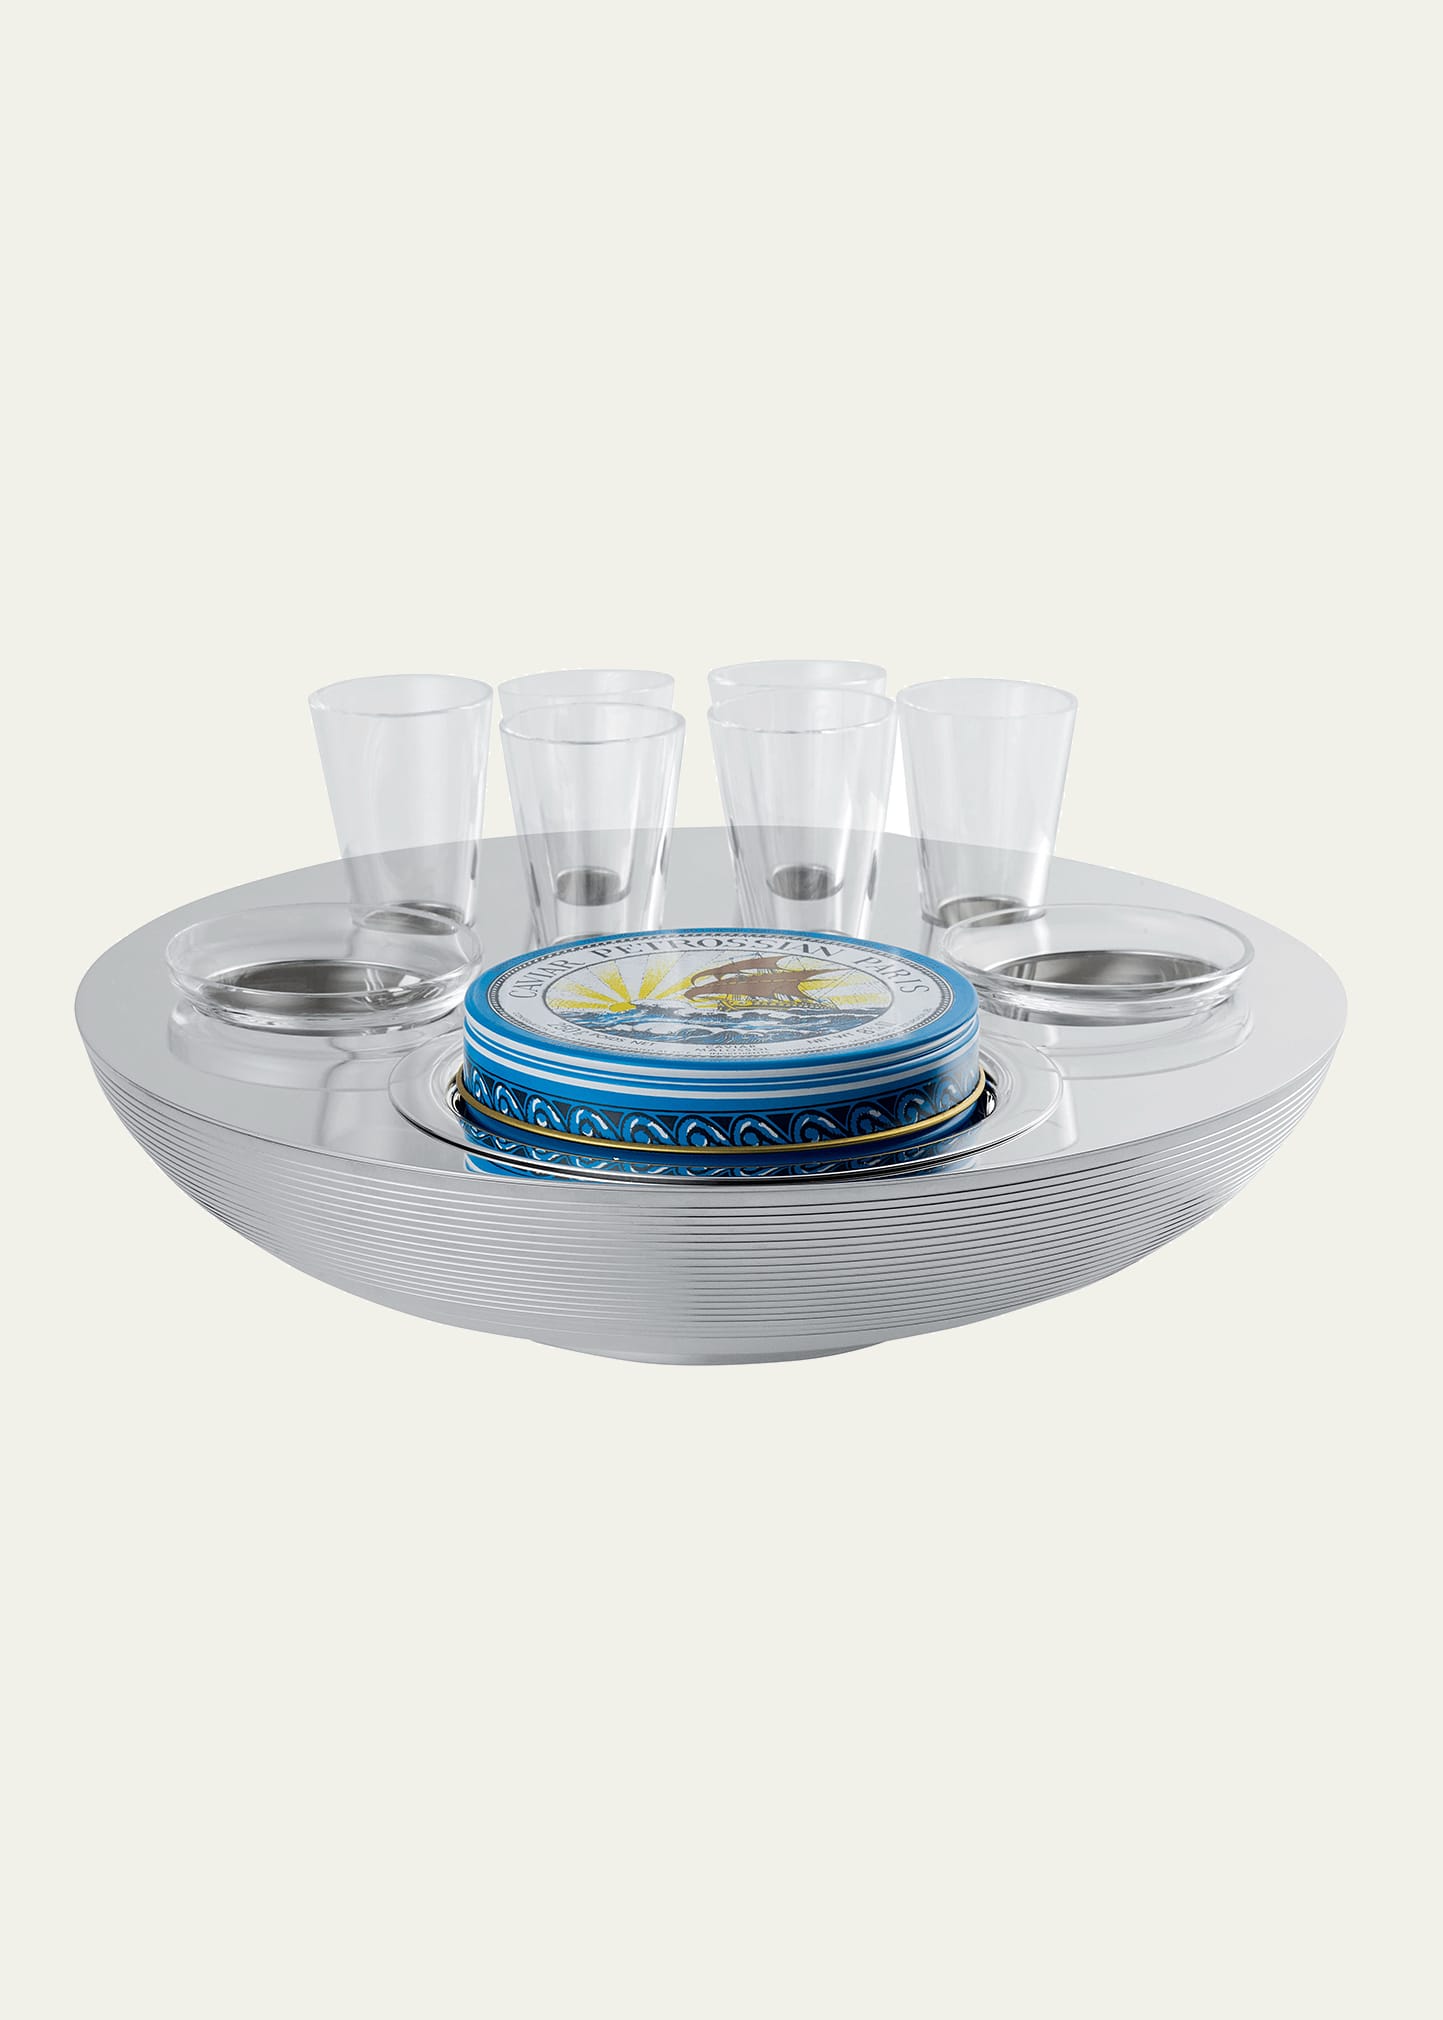 Transat Caviar Vodka Set